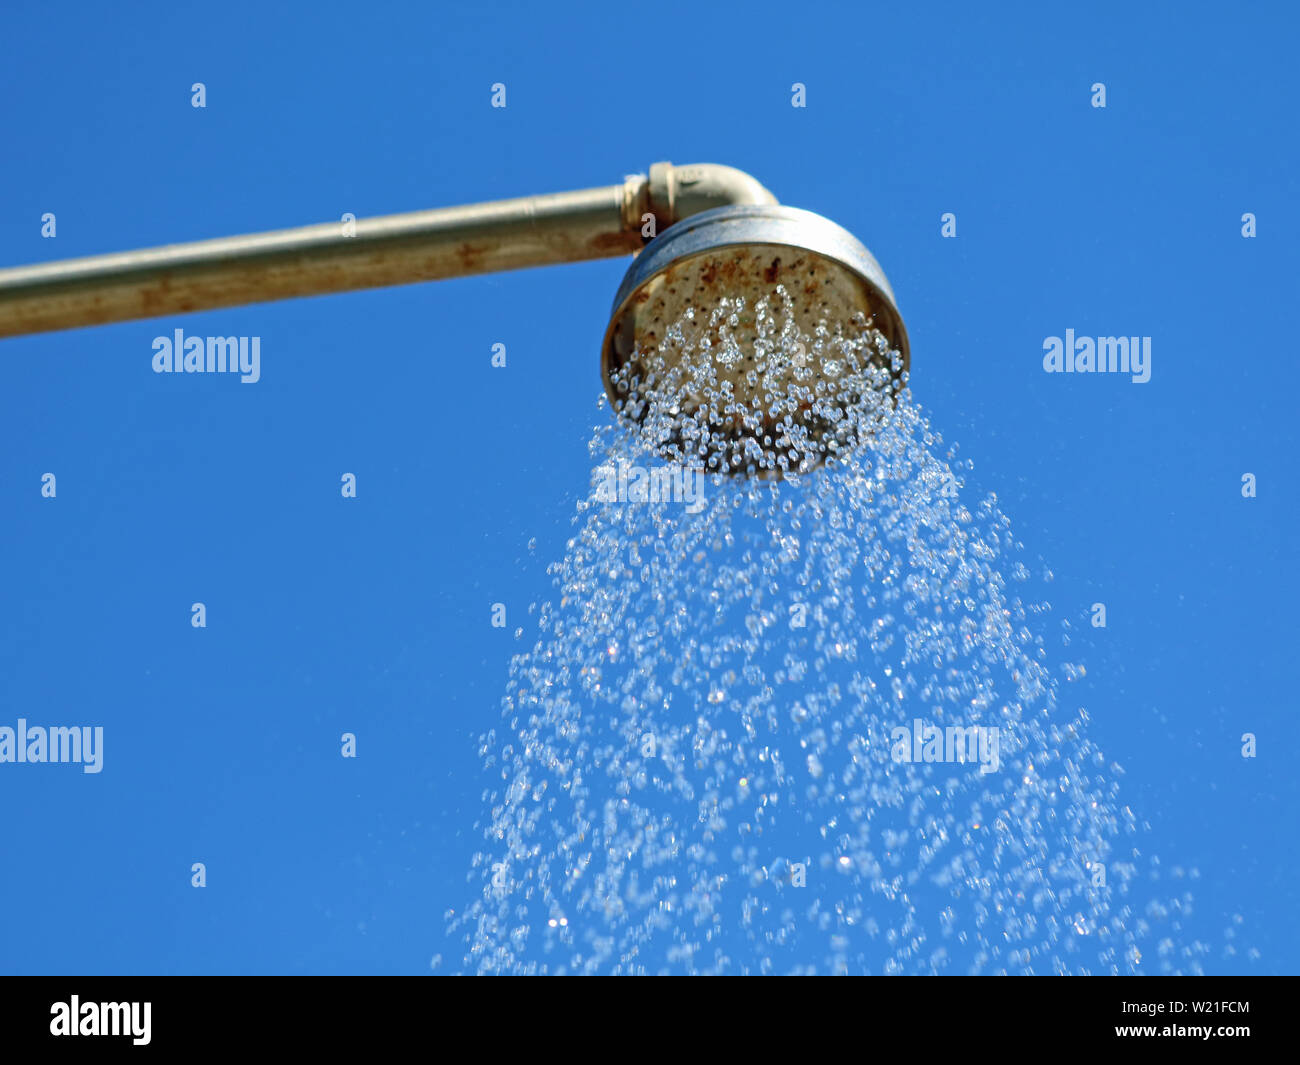 Nahaufnahme, Dusche im Freien Kopf mit Wassertropfen auf den blauen Himmel Hintergrund Stockfoto